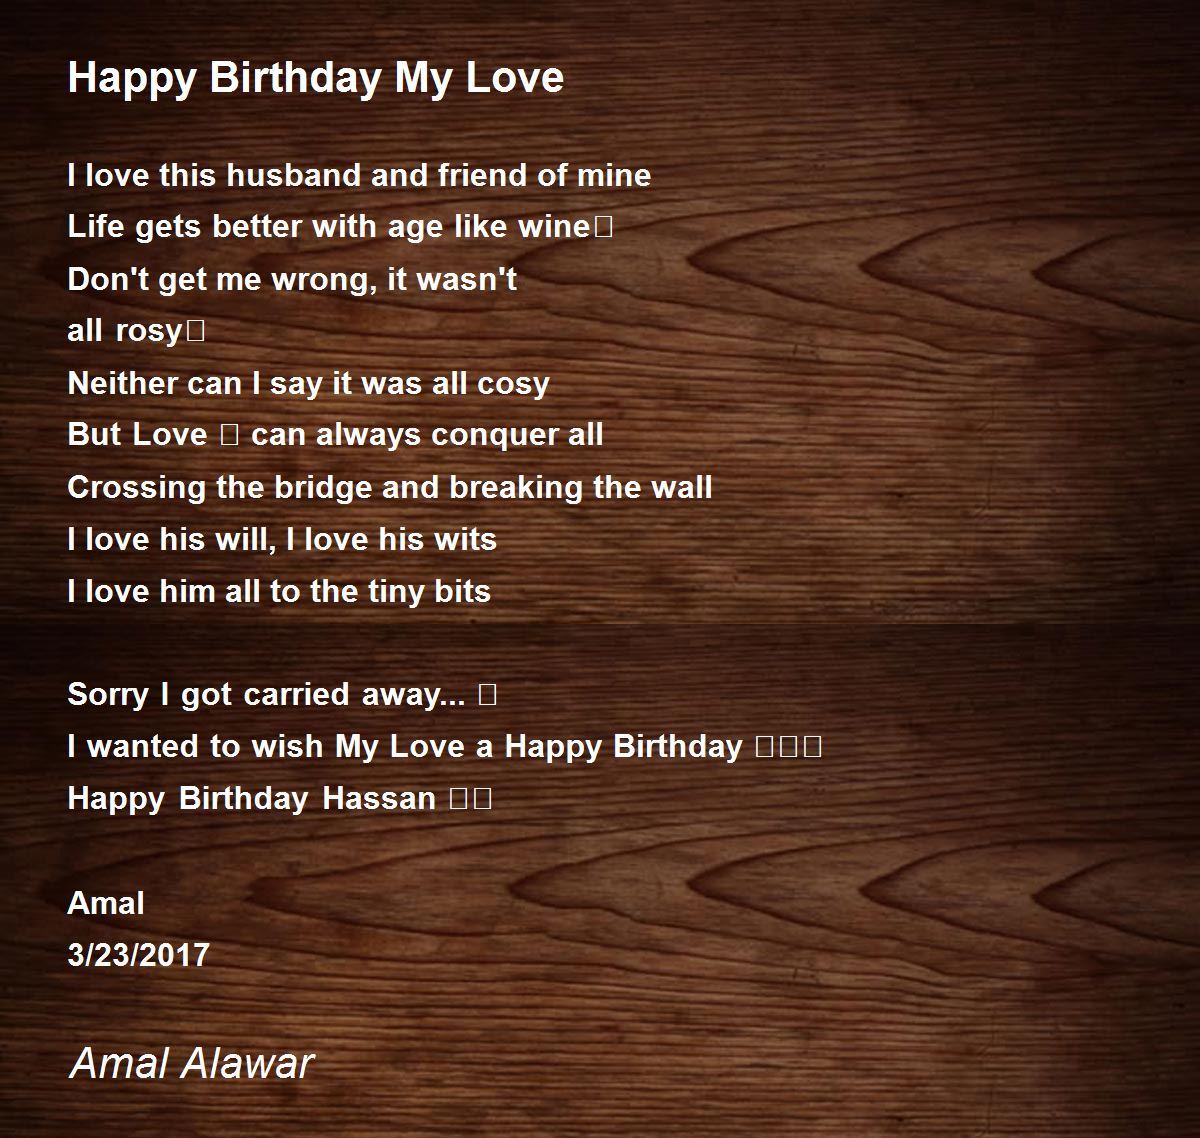 Happy Birthday My Love - Happy Birthday My Love Poem by Amal Alawar